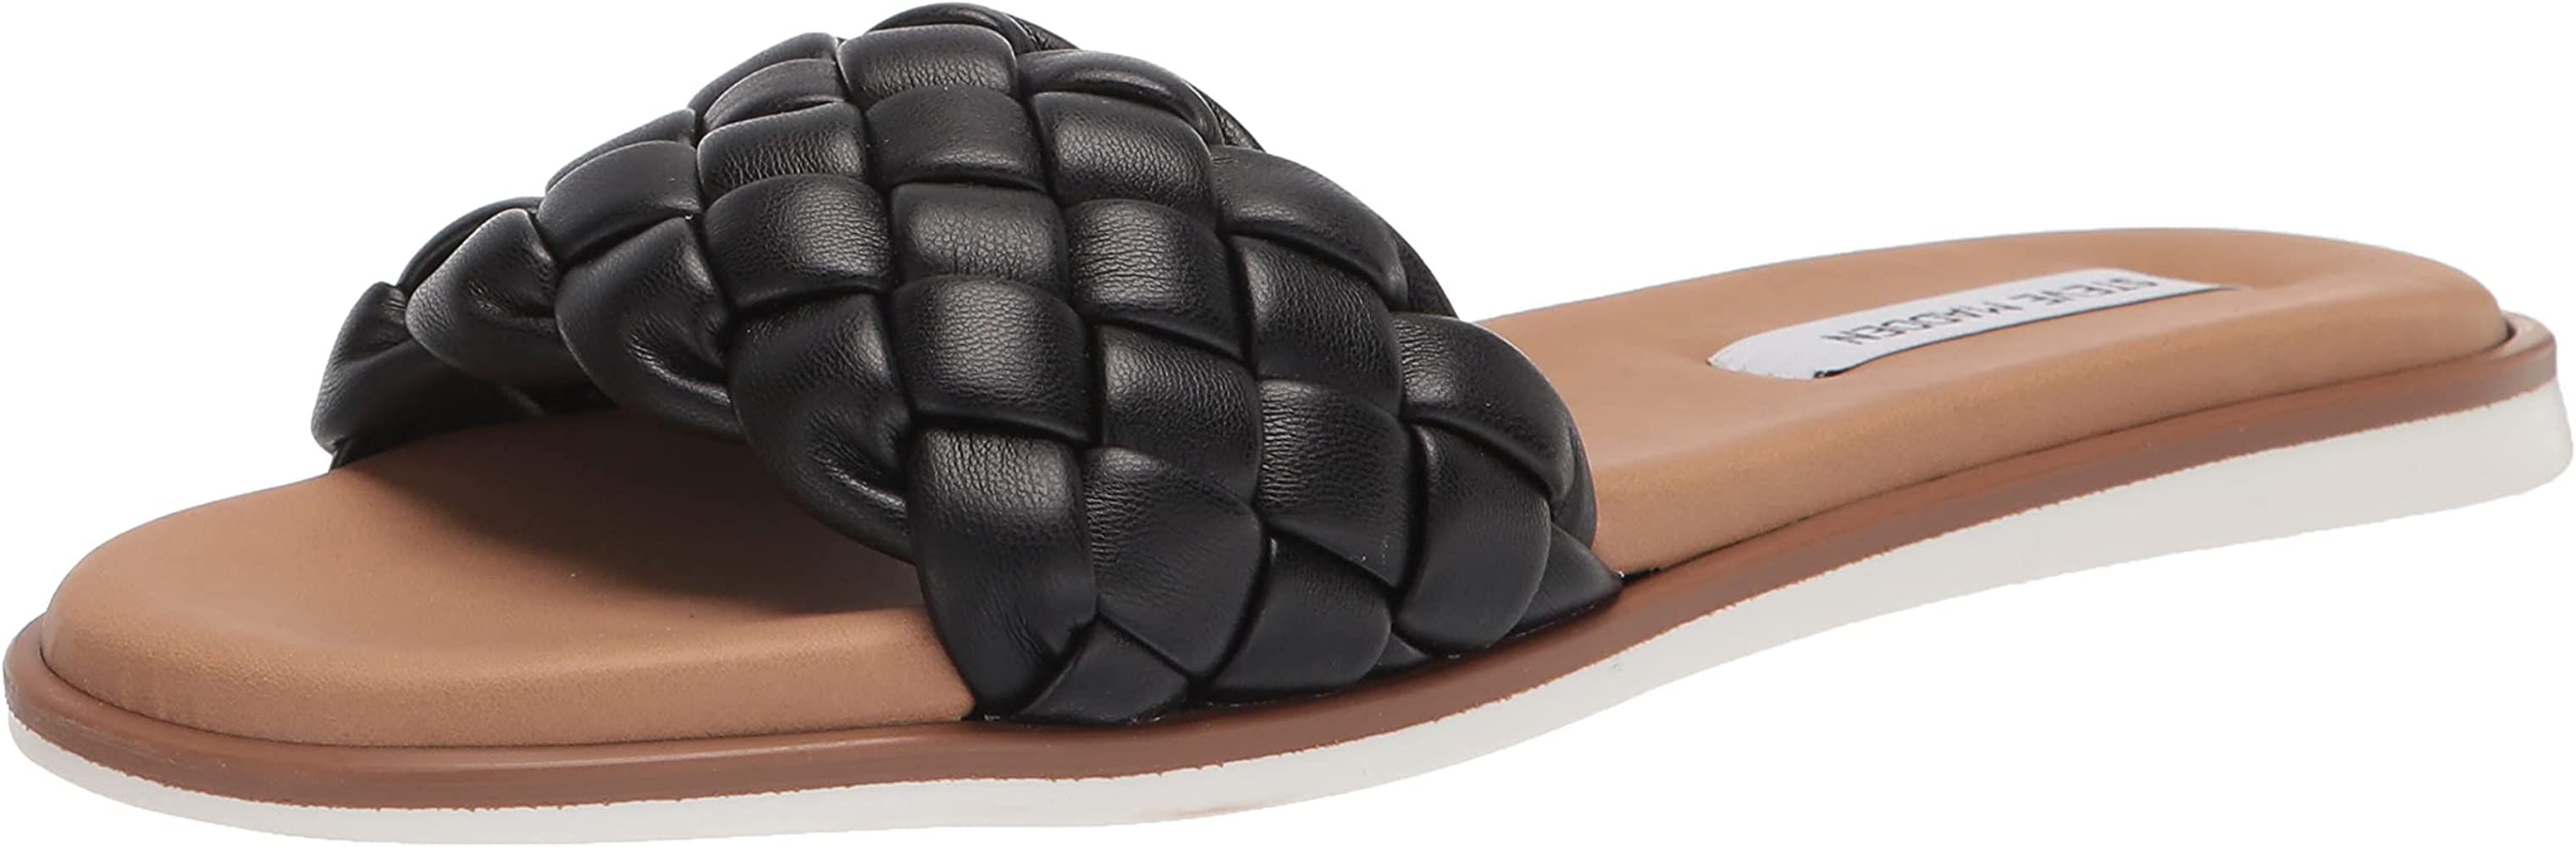 Amazon Sandals, Amazon Shoes | Amazon (US)